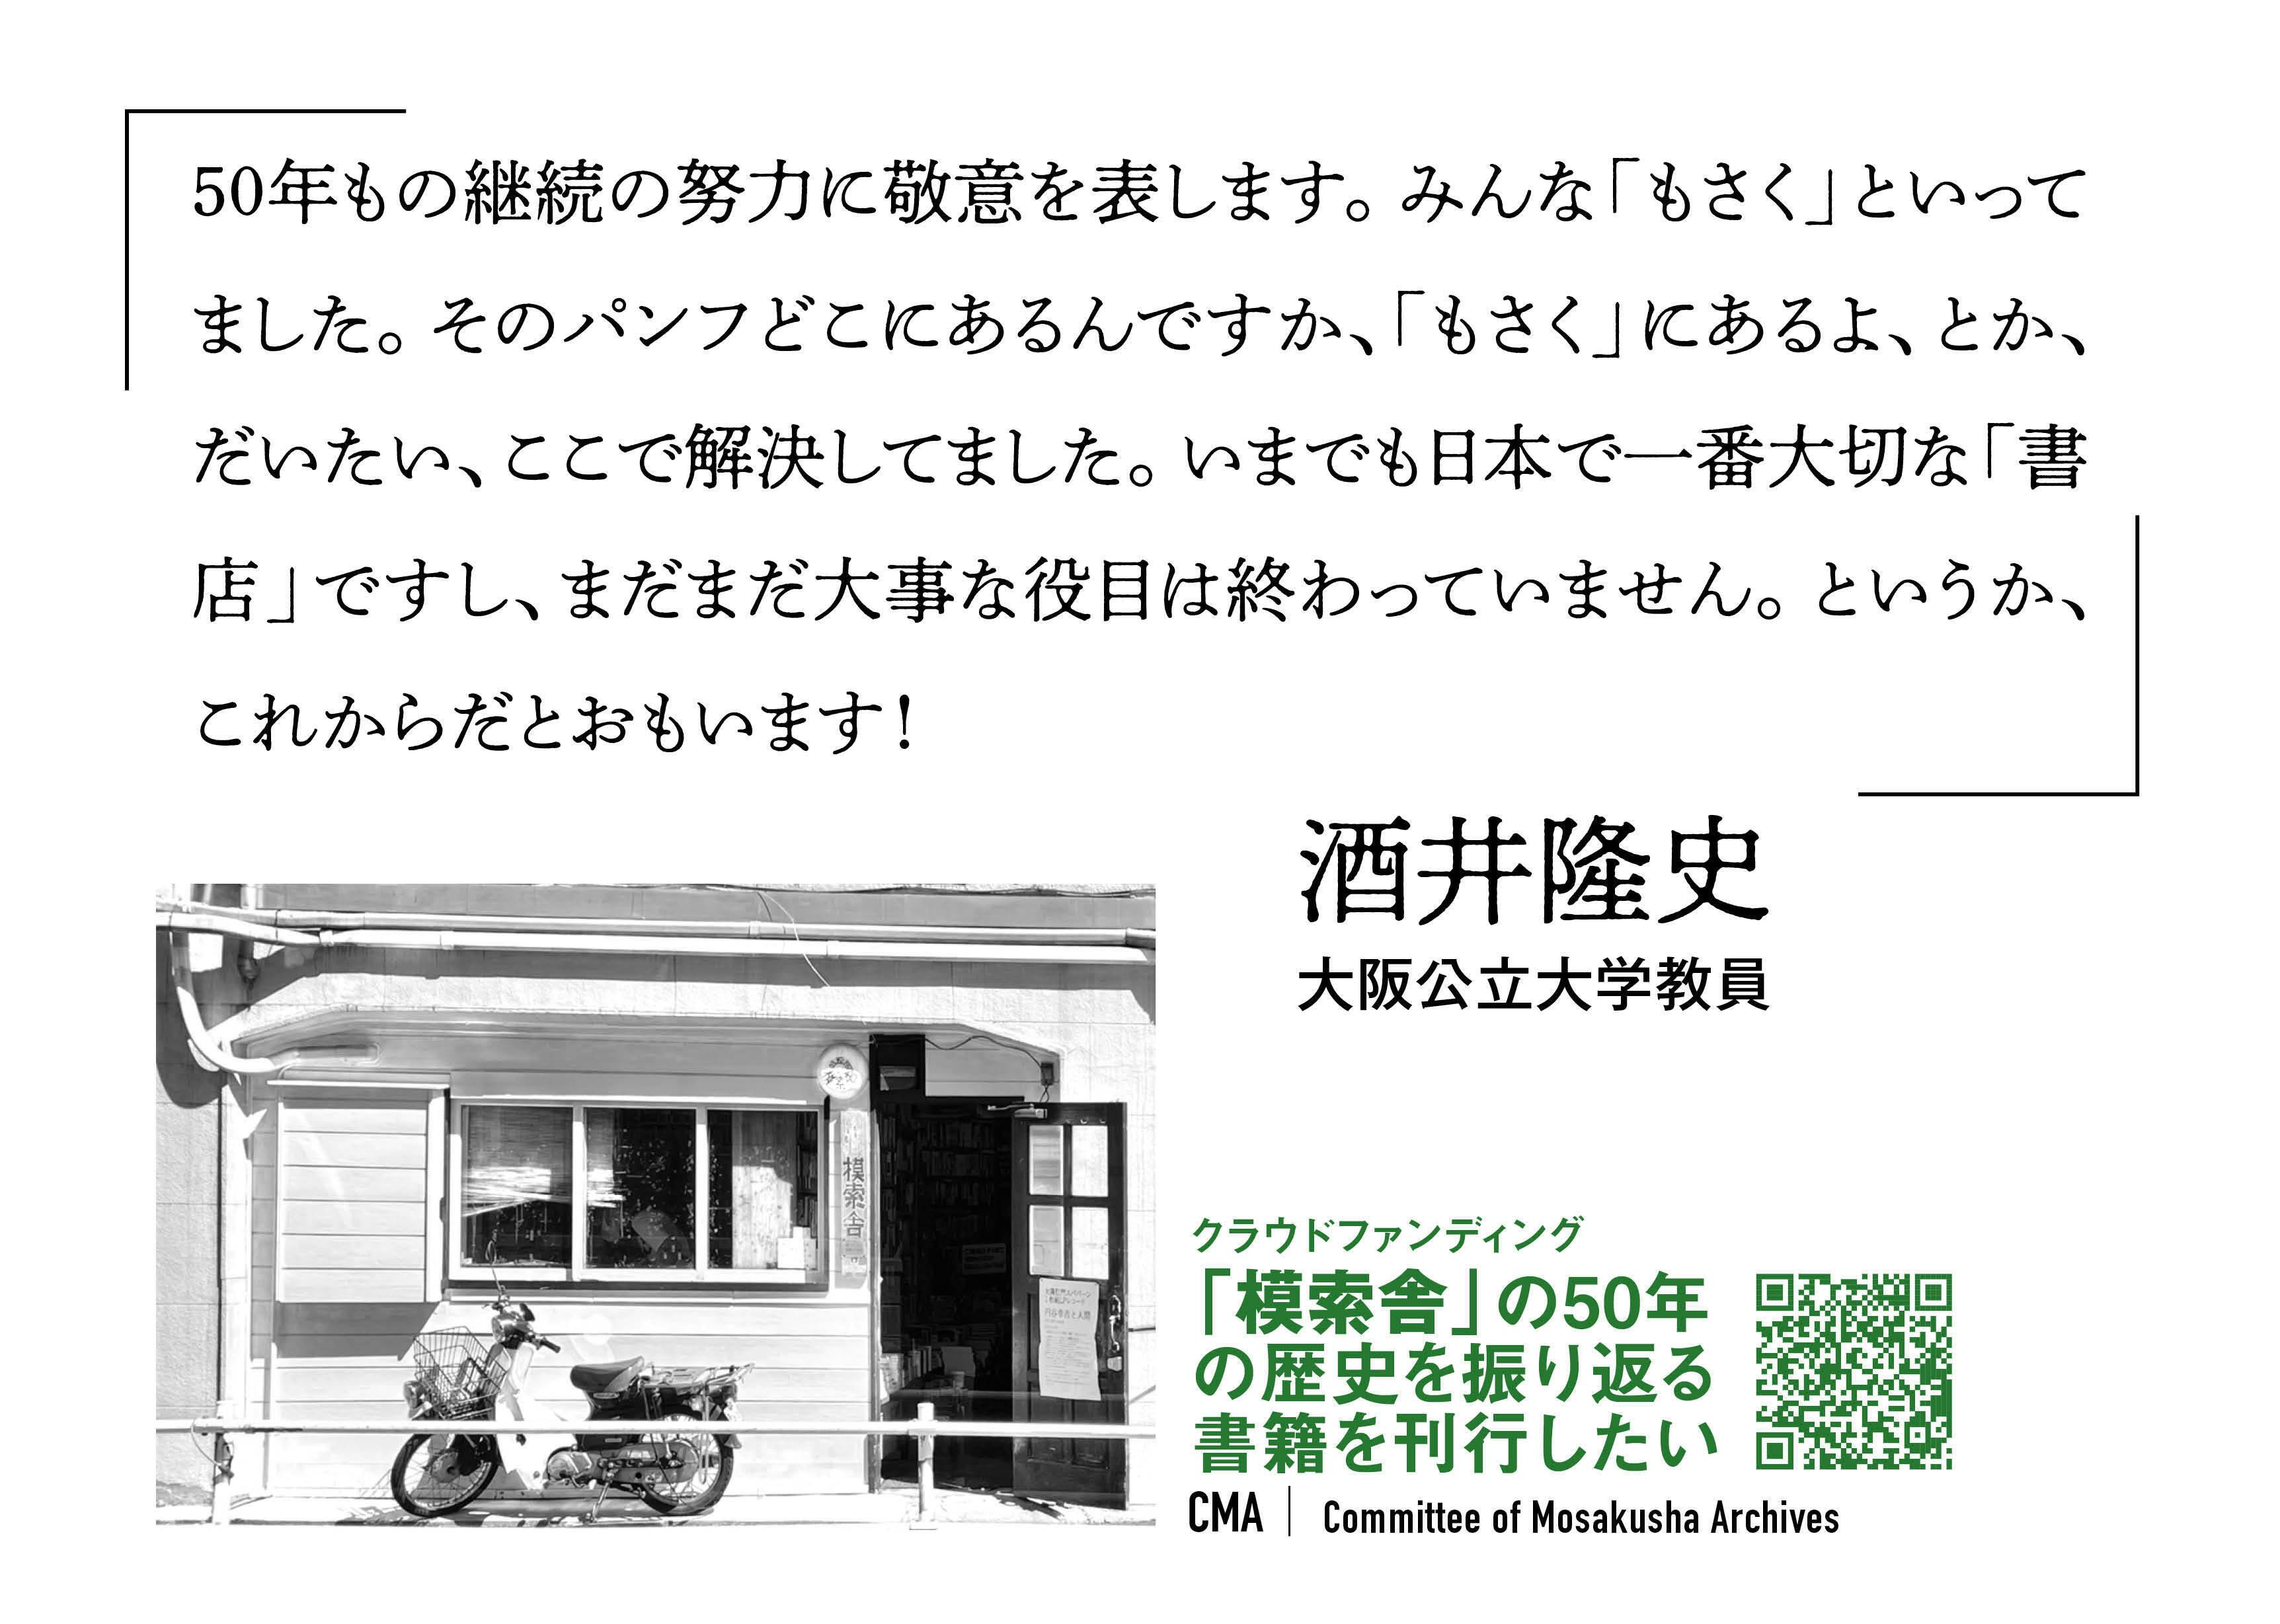 (キャンプファイヤー)　酒井隆史さん（大阪公立大学教員）からメッセージが届きました。　CAMPFIRE